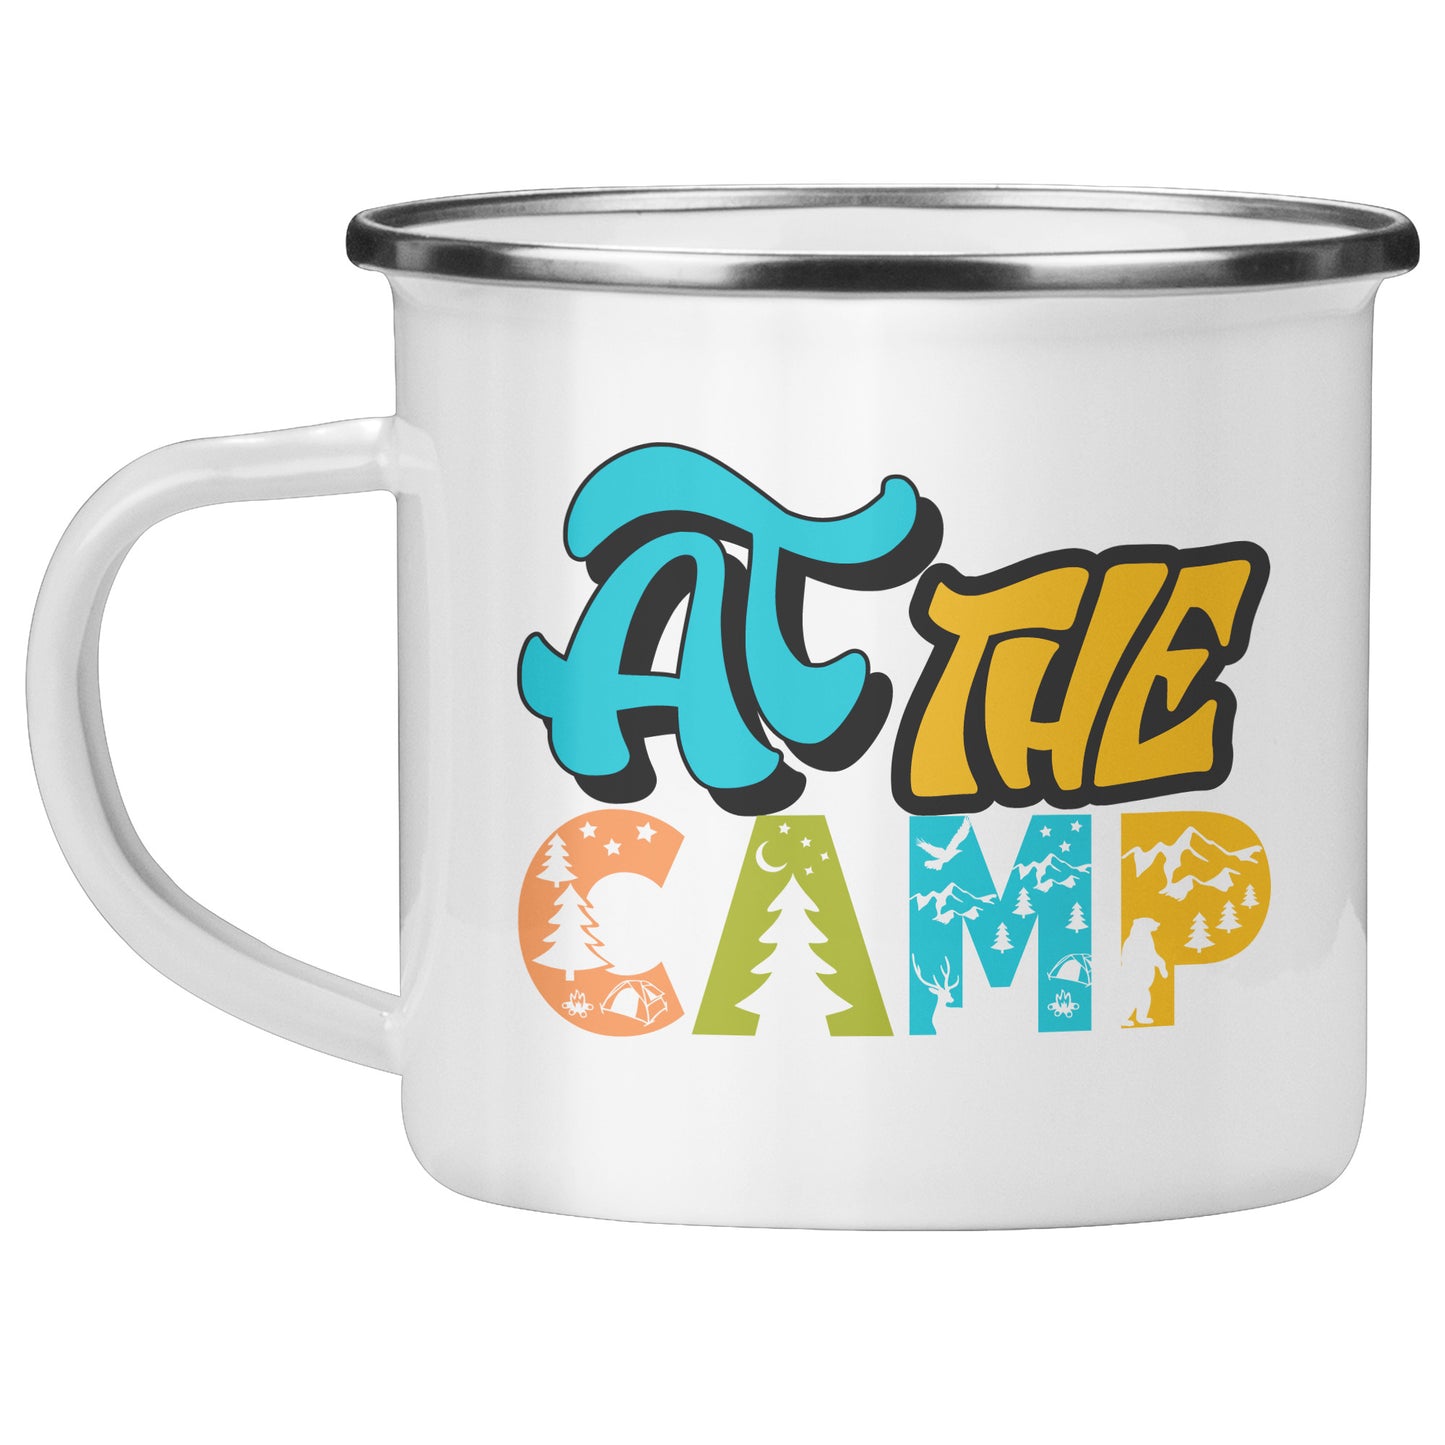 At The Camp 10 oz Camping Mug